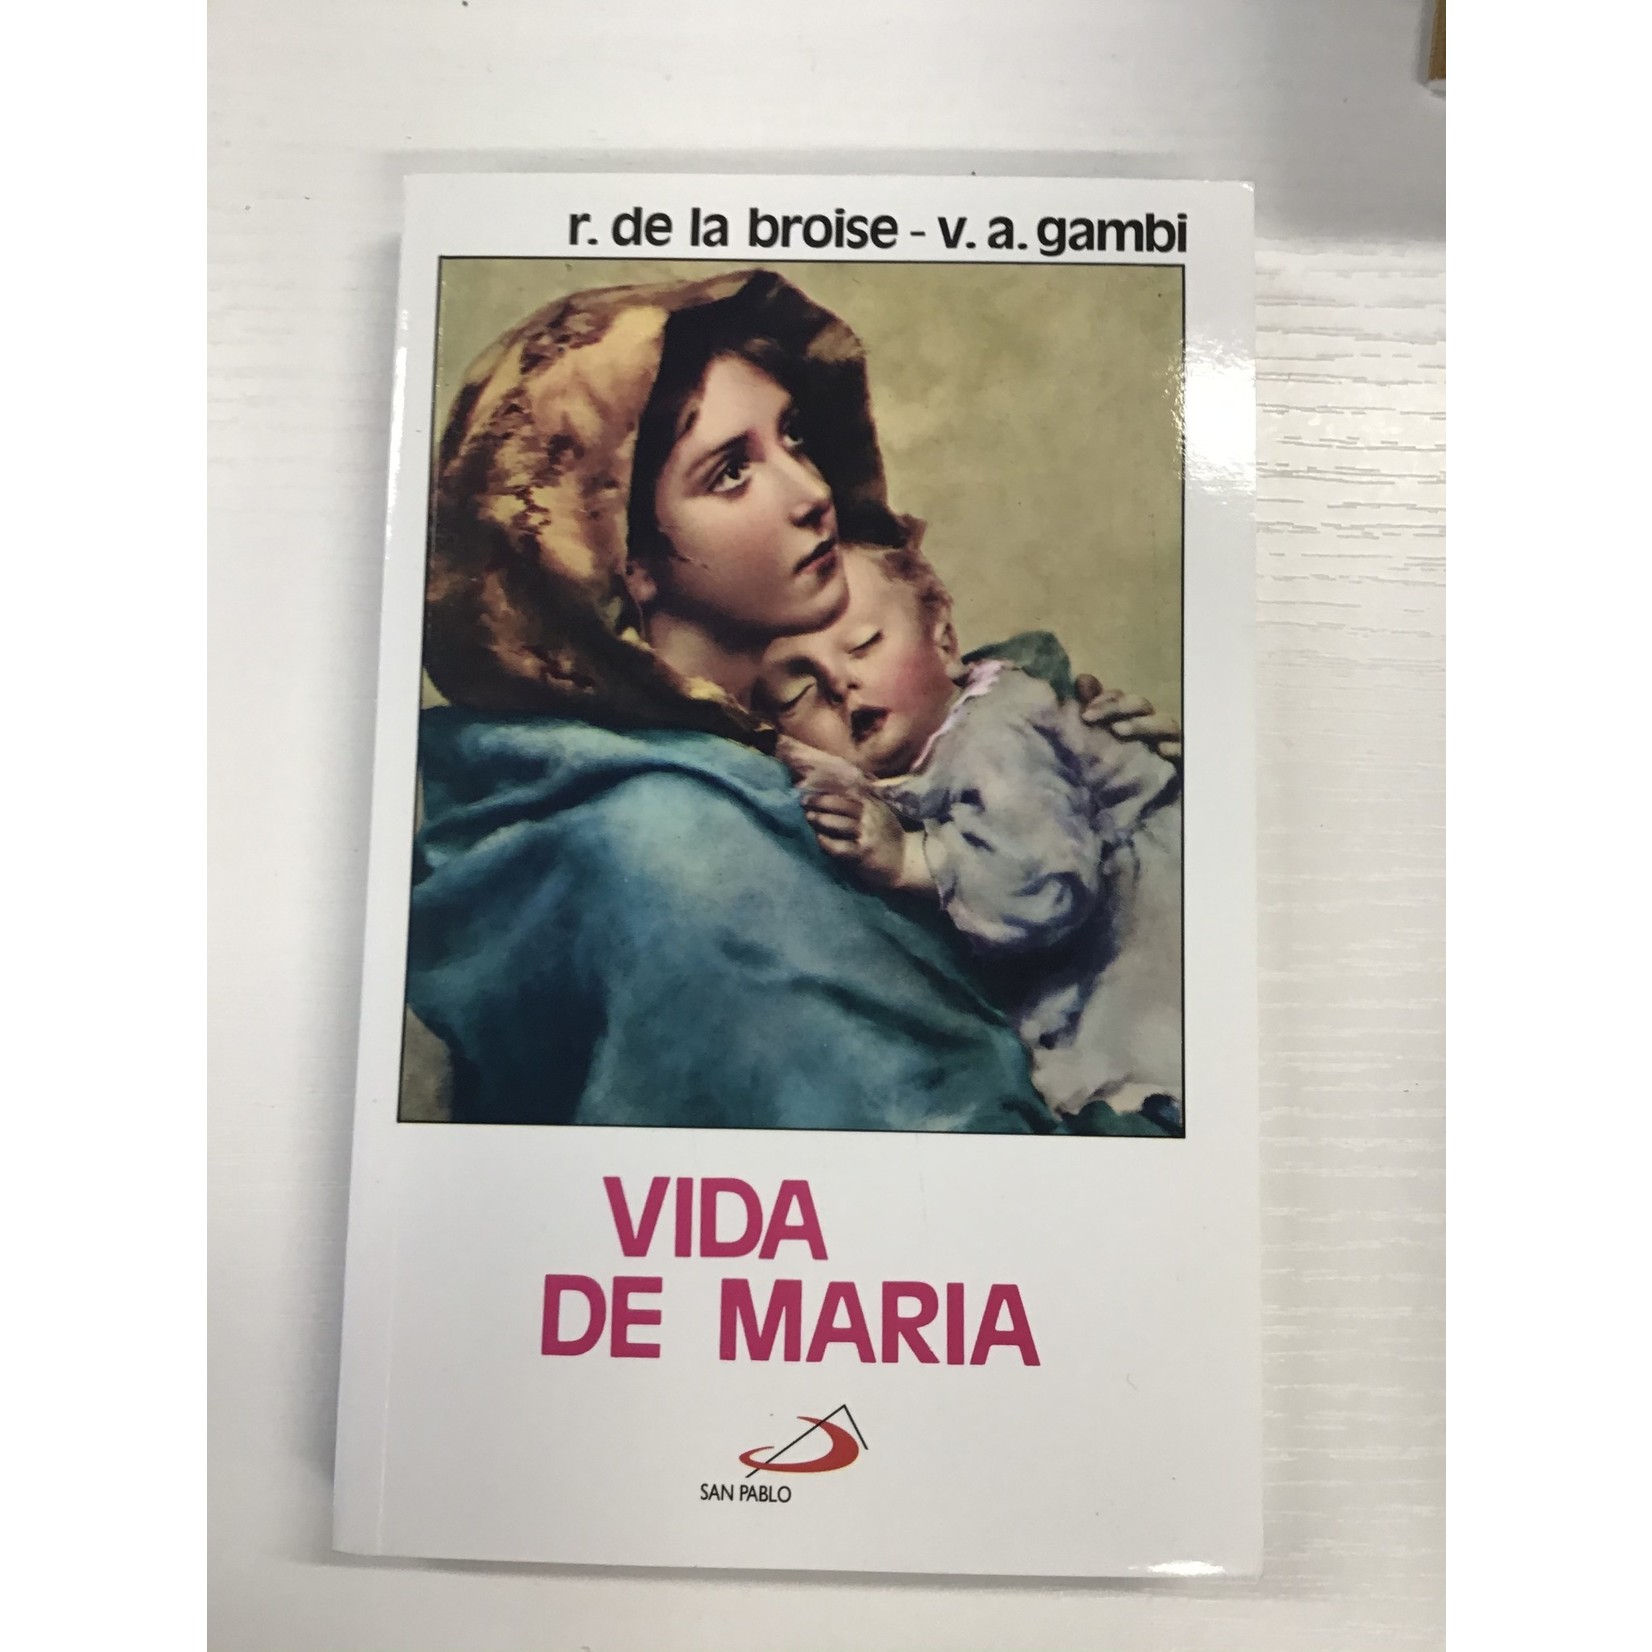 Vida de Maria